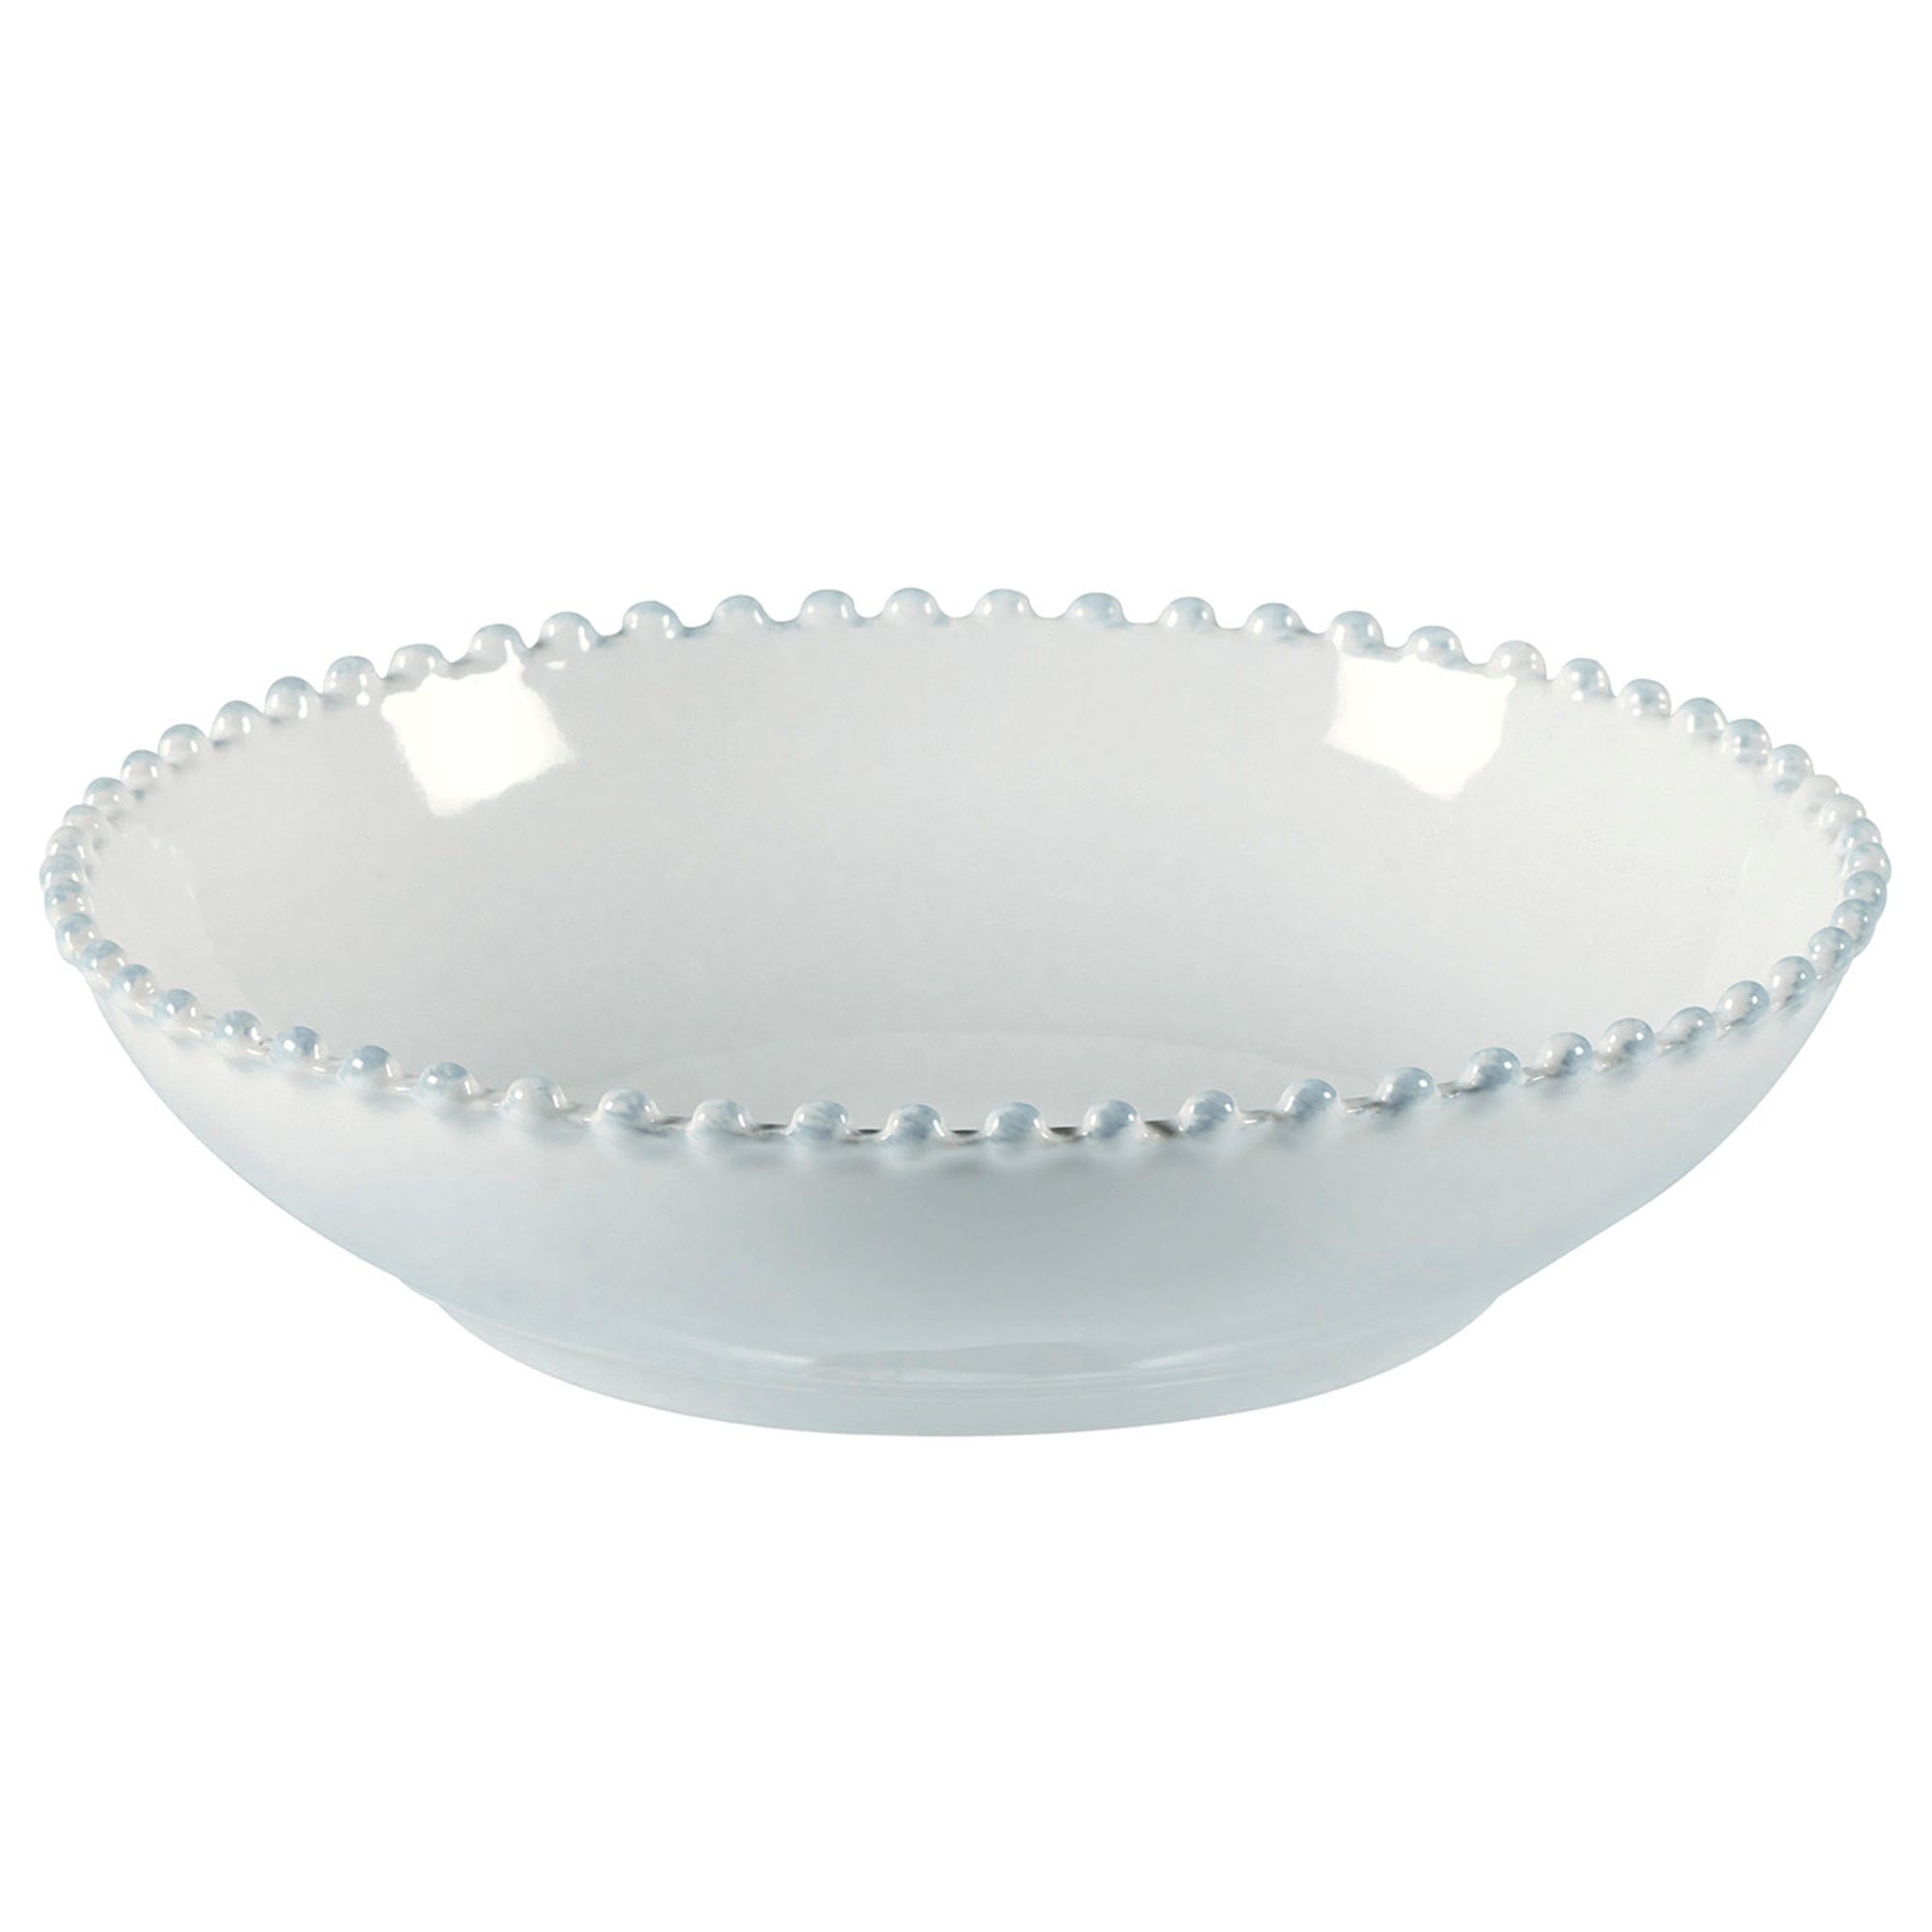 Costa Nova Costa Nova Pearl White Pasta bowl 23 cm | 9'' PEP231-02202F